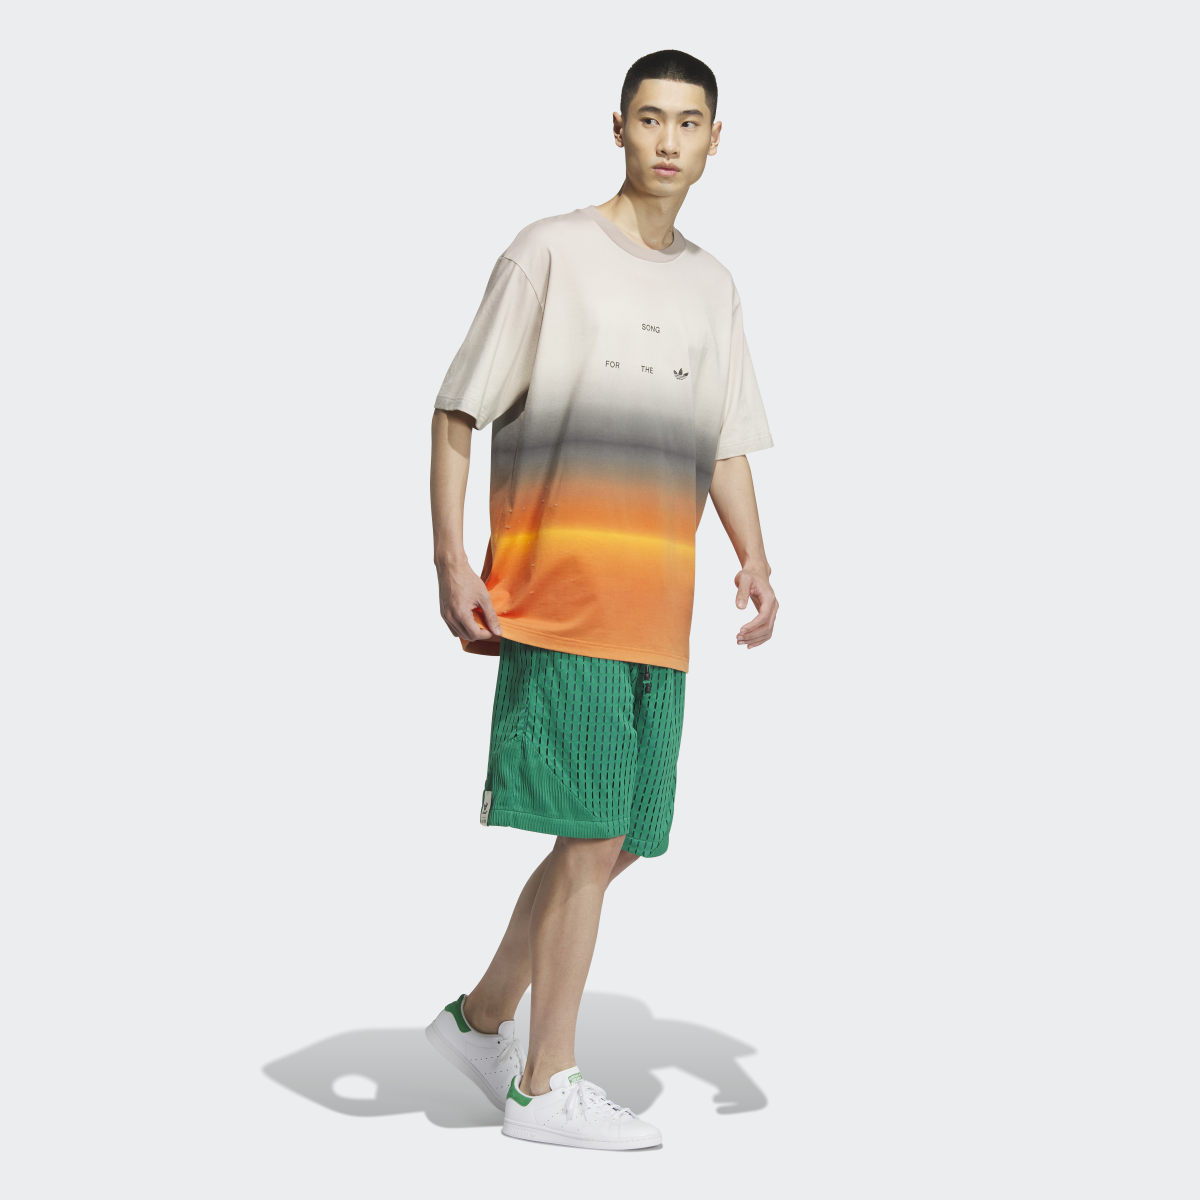 Adidas Koszulka SFTM Short Sleeve (Gender Neutral). 4